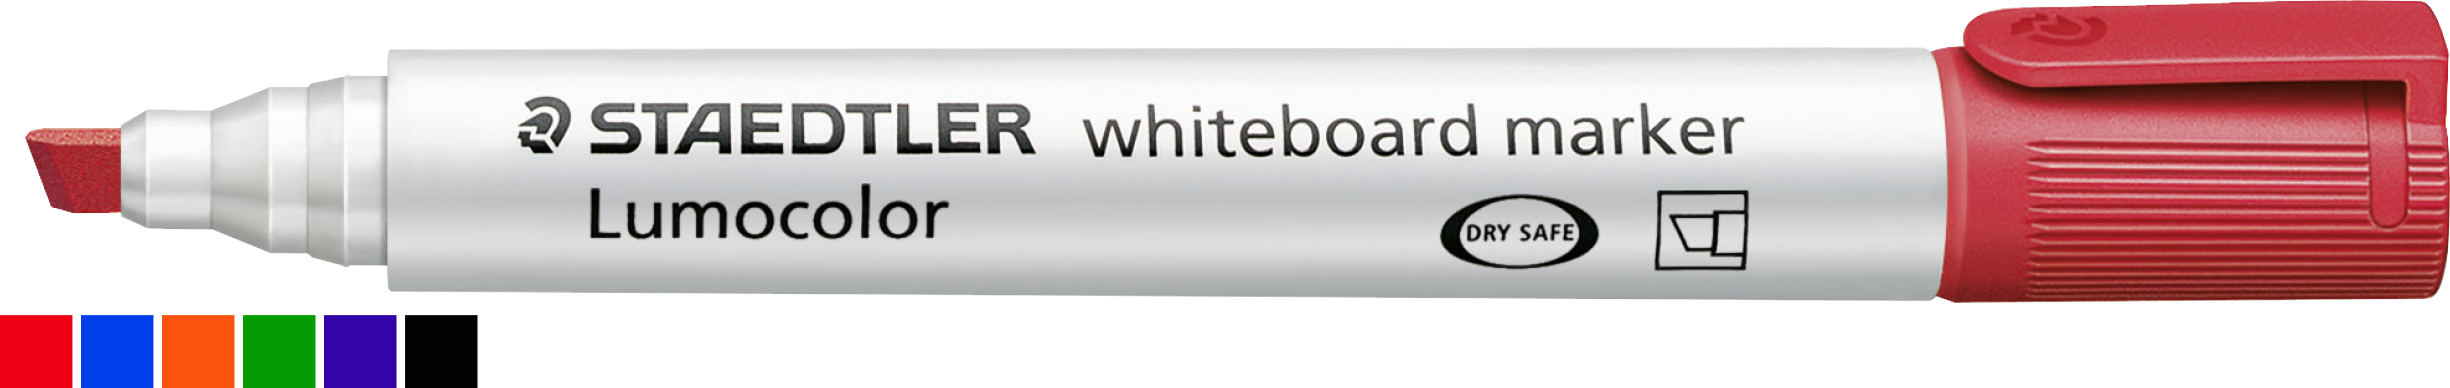 Whiteboardmarker von STAEDTLER